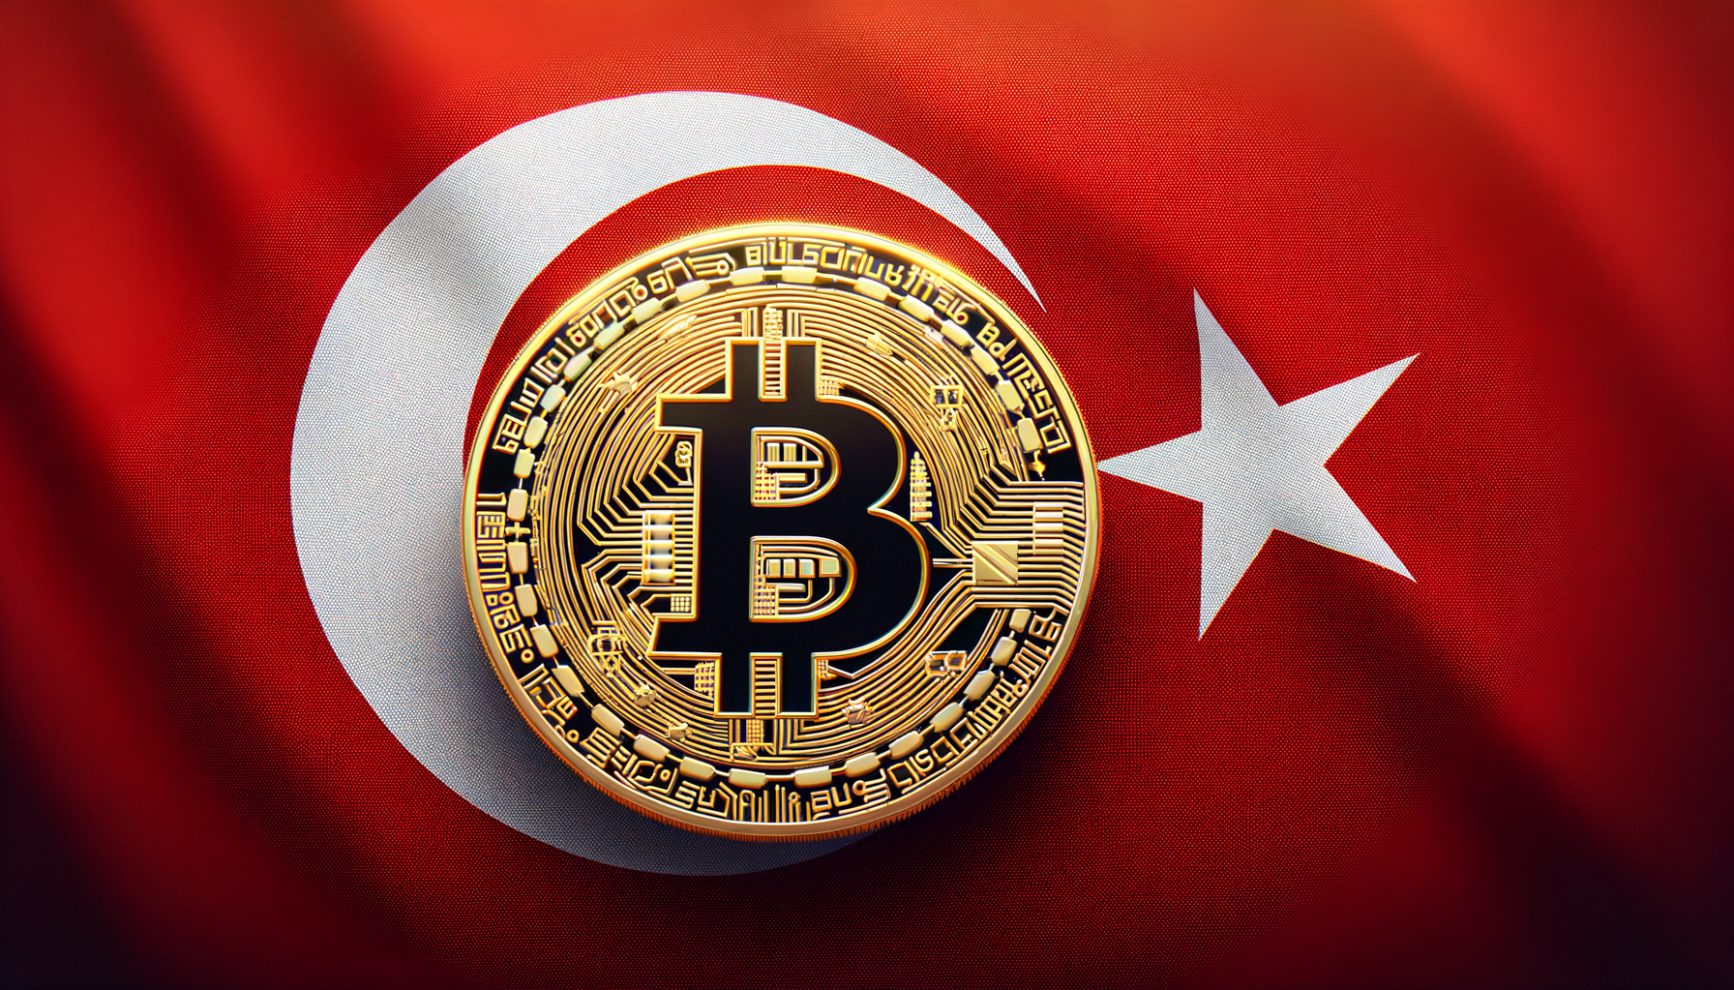 Turkey Eyes Crypto Rule Overhaul: Focus on Licensing